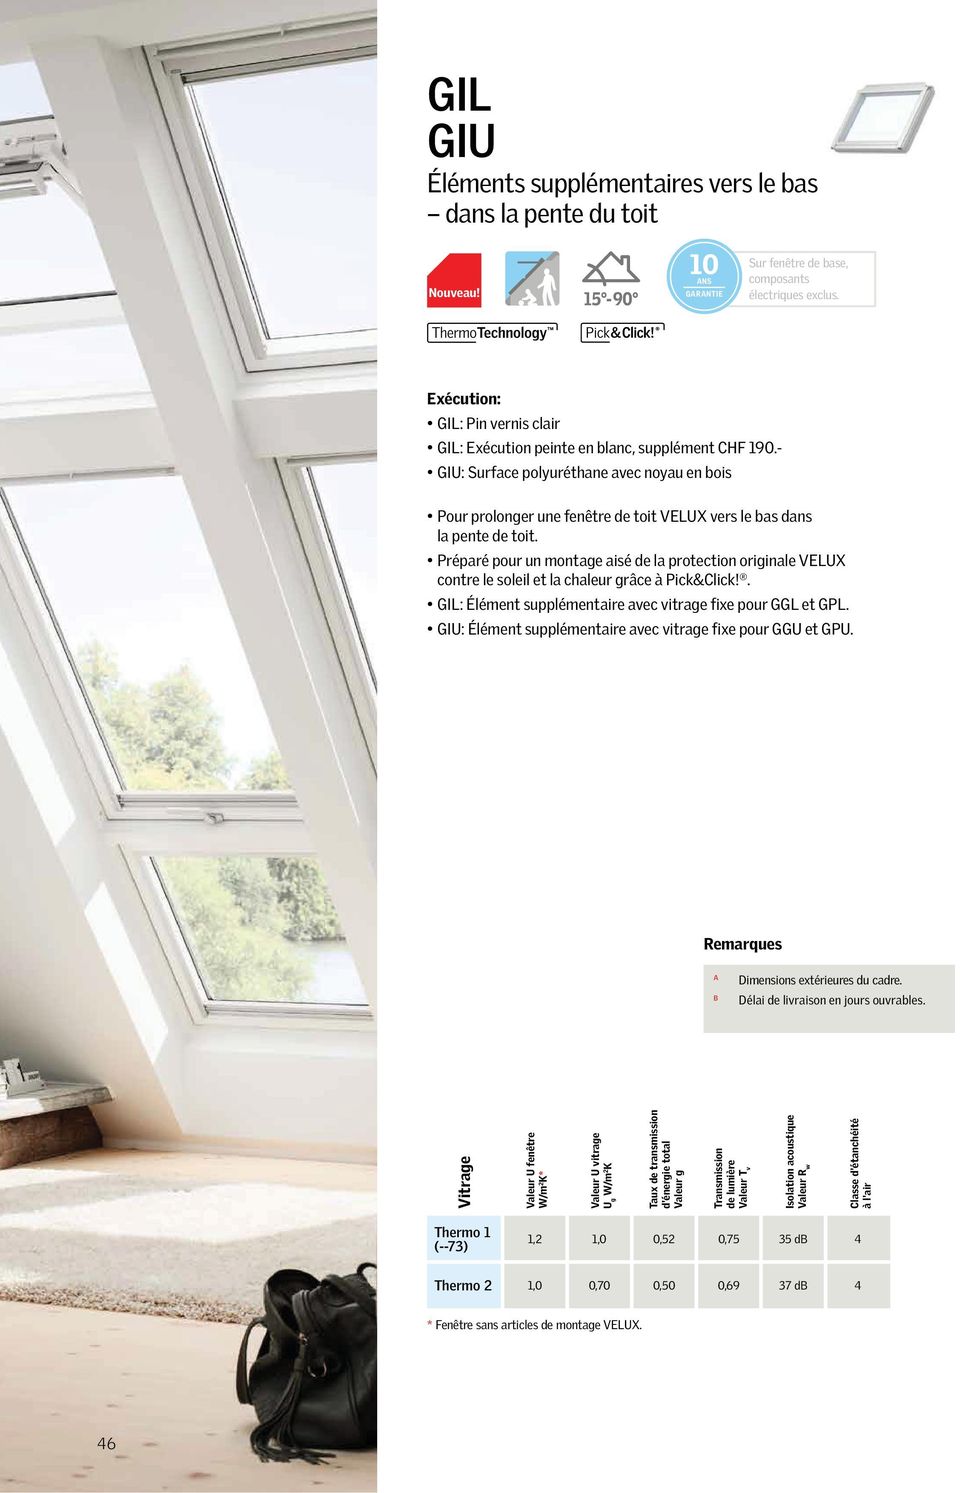 - GIU: Surface polyuréthane avec noyau en bois Pour prolonger une fenêtre de toit VELUX vers le bas dans la pente de toit.